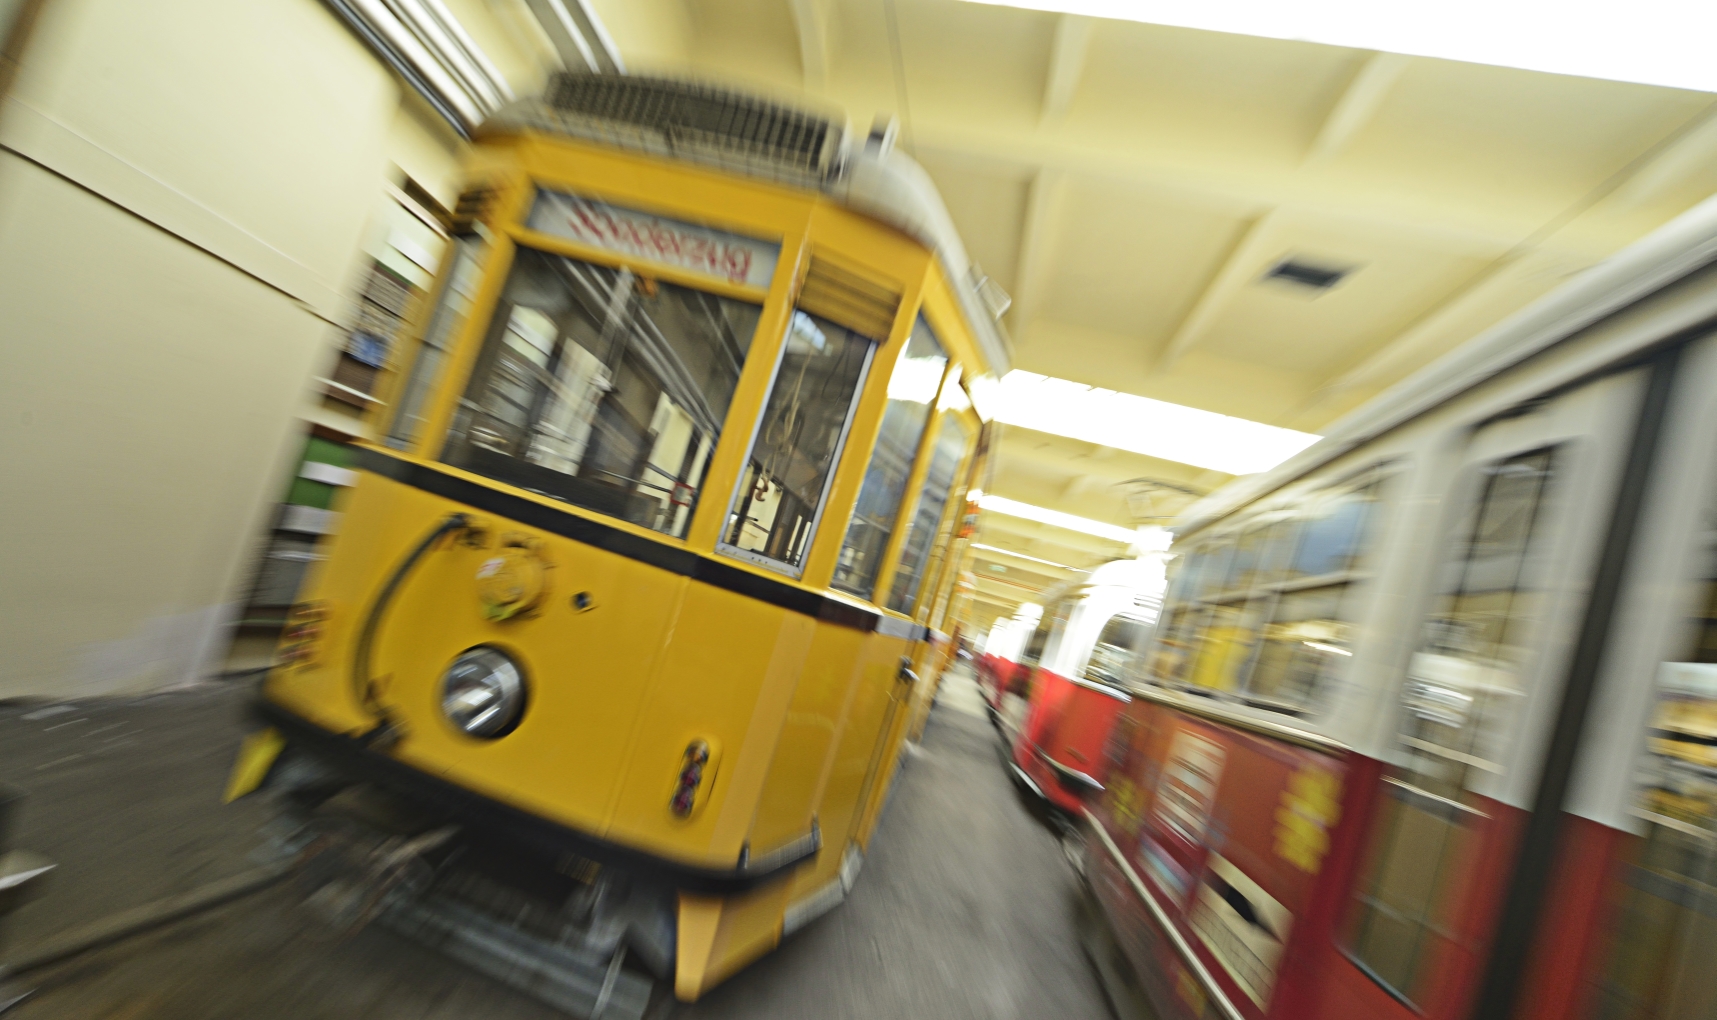 Im Museum der Wiener Linien in Erdberg befinden sich viele historische Fahrzeuge, Straßenbahnen wie Busse, aber auch etliche Sonderfahrzeuge.